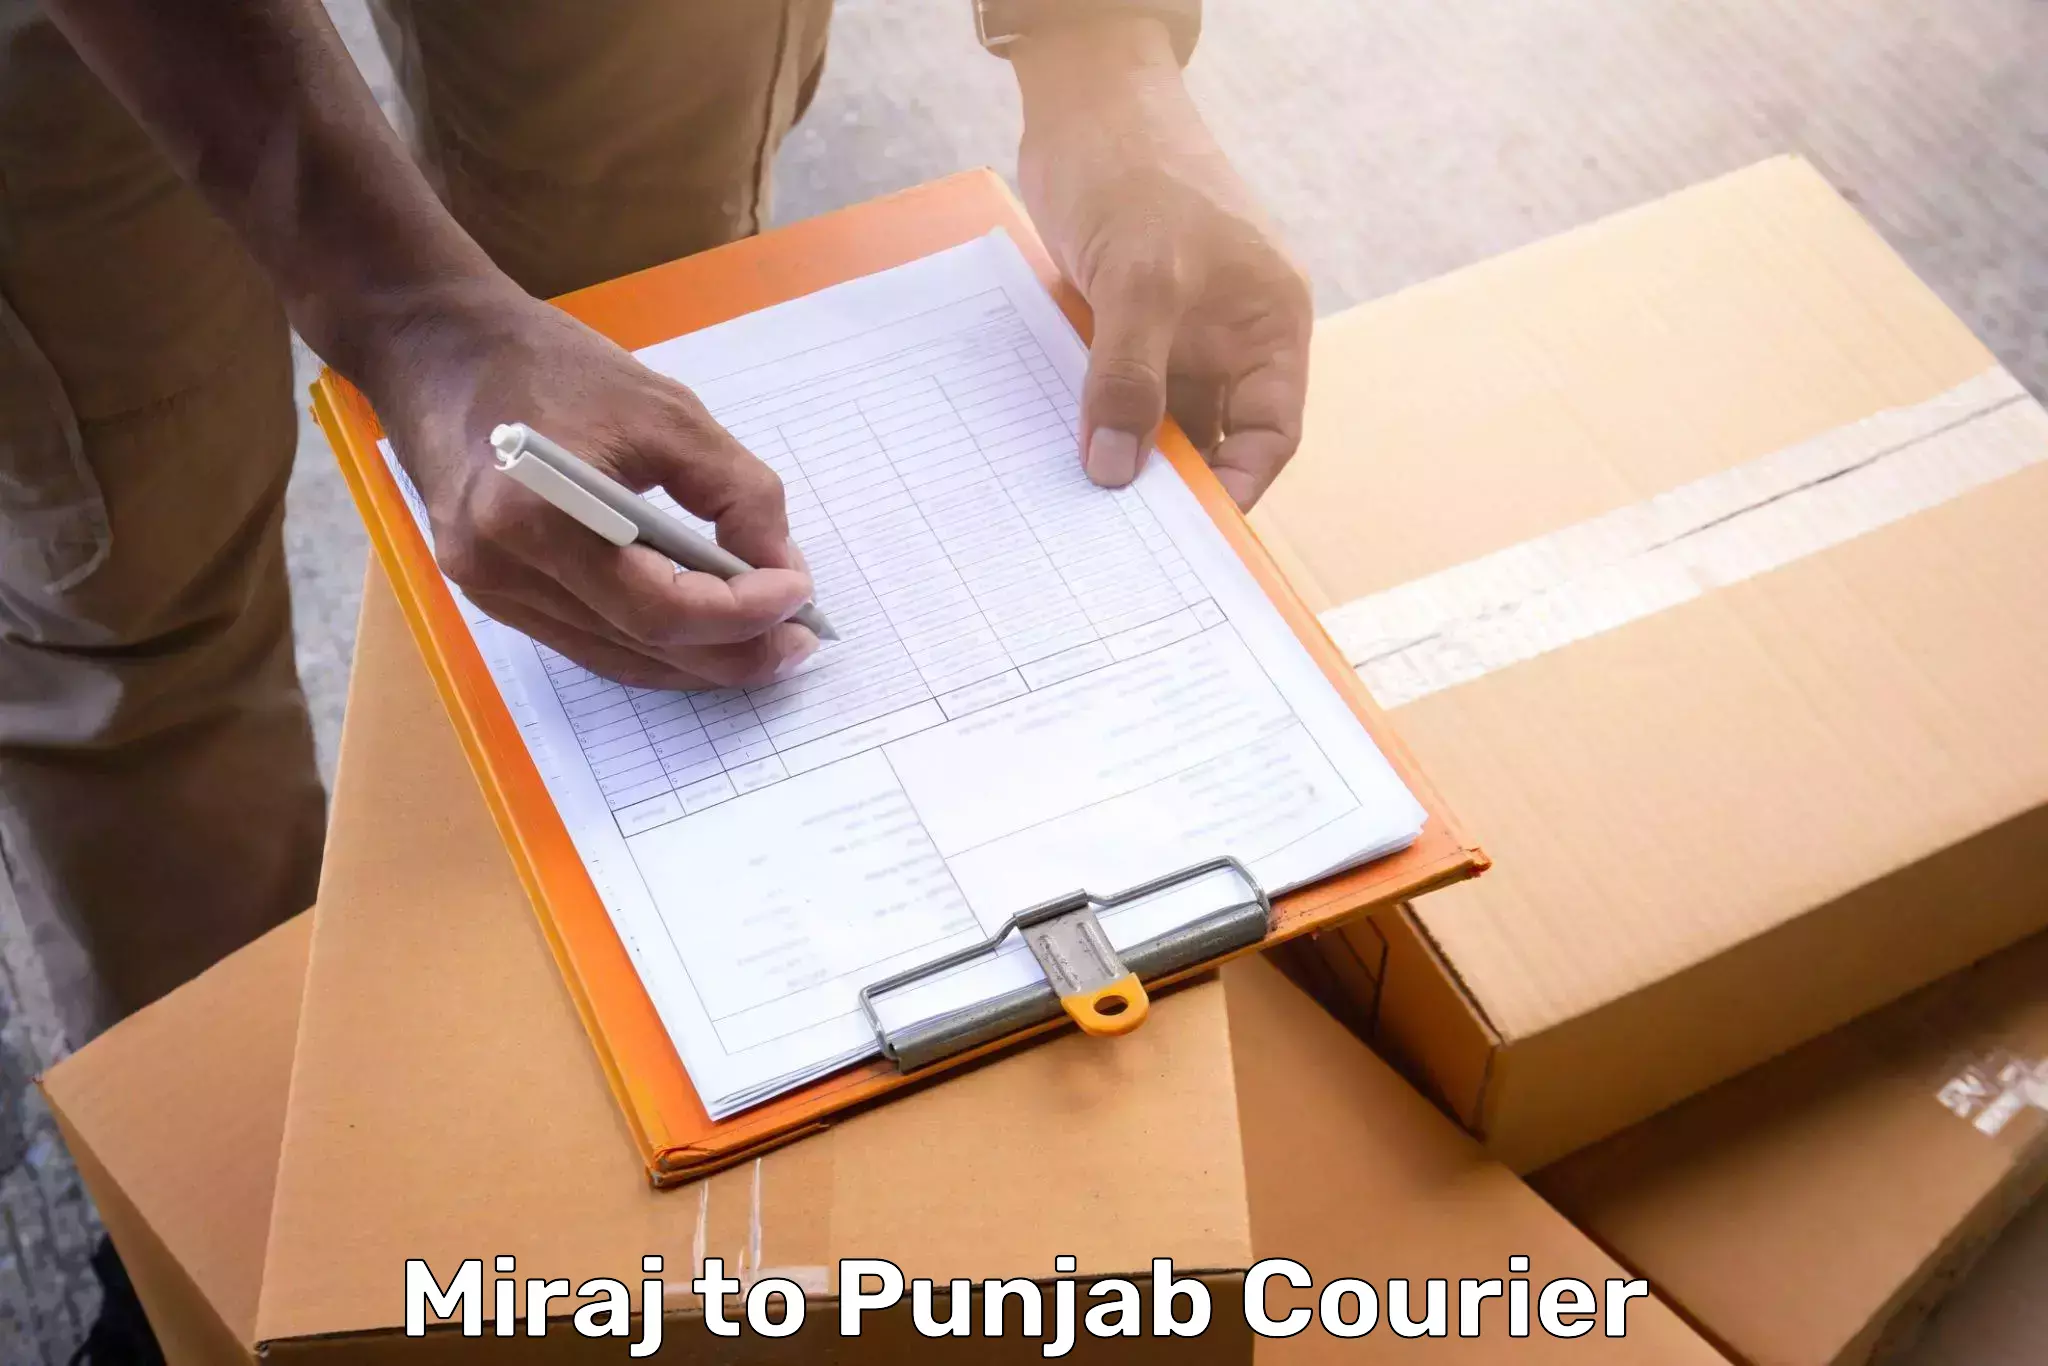 Same day luggage service Miraj to Punjab